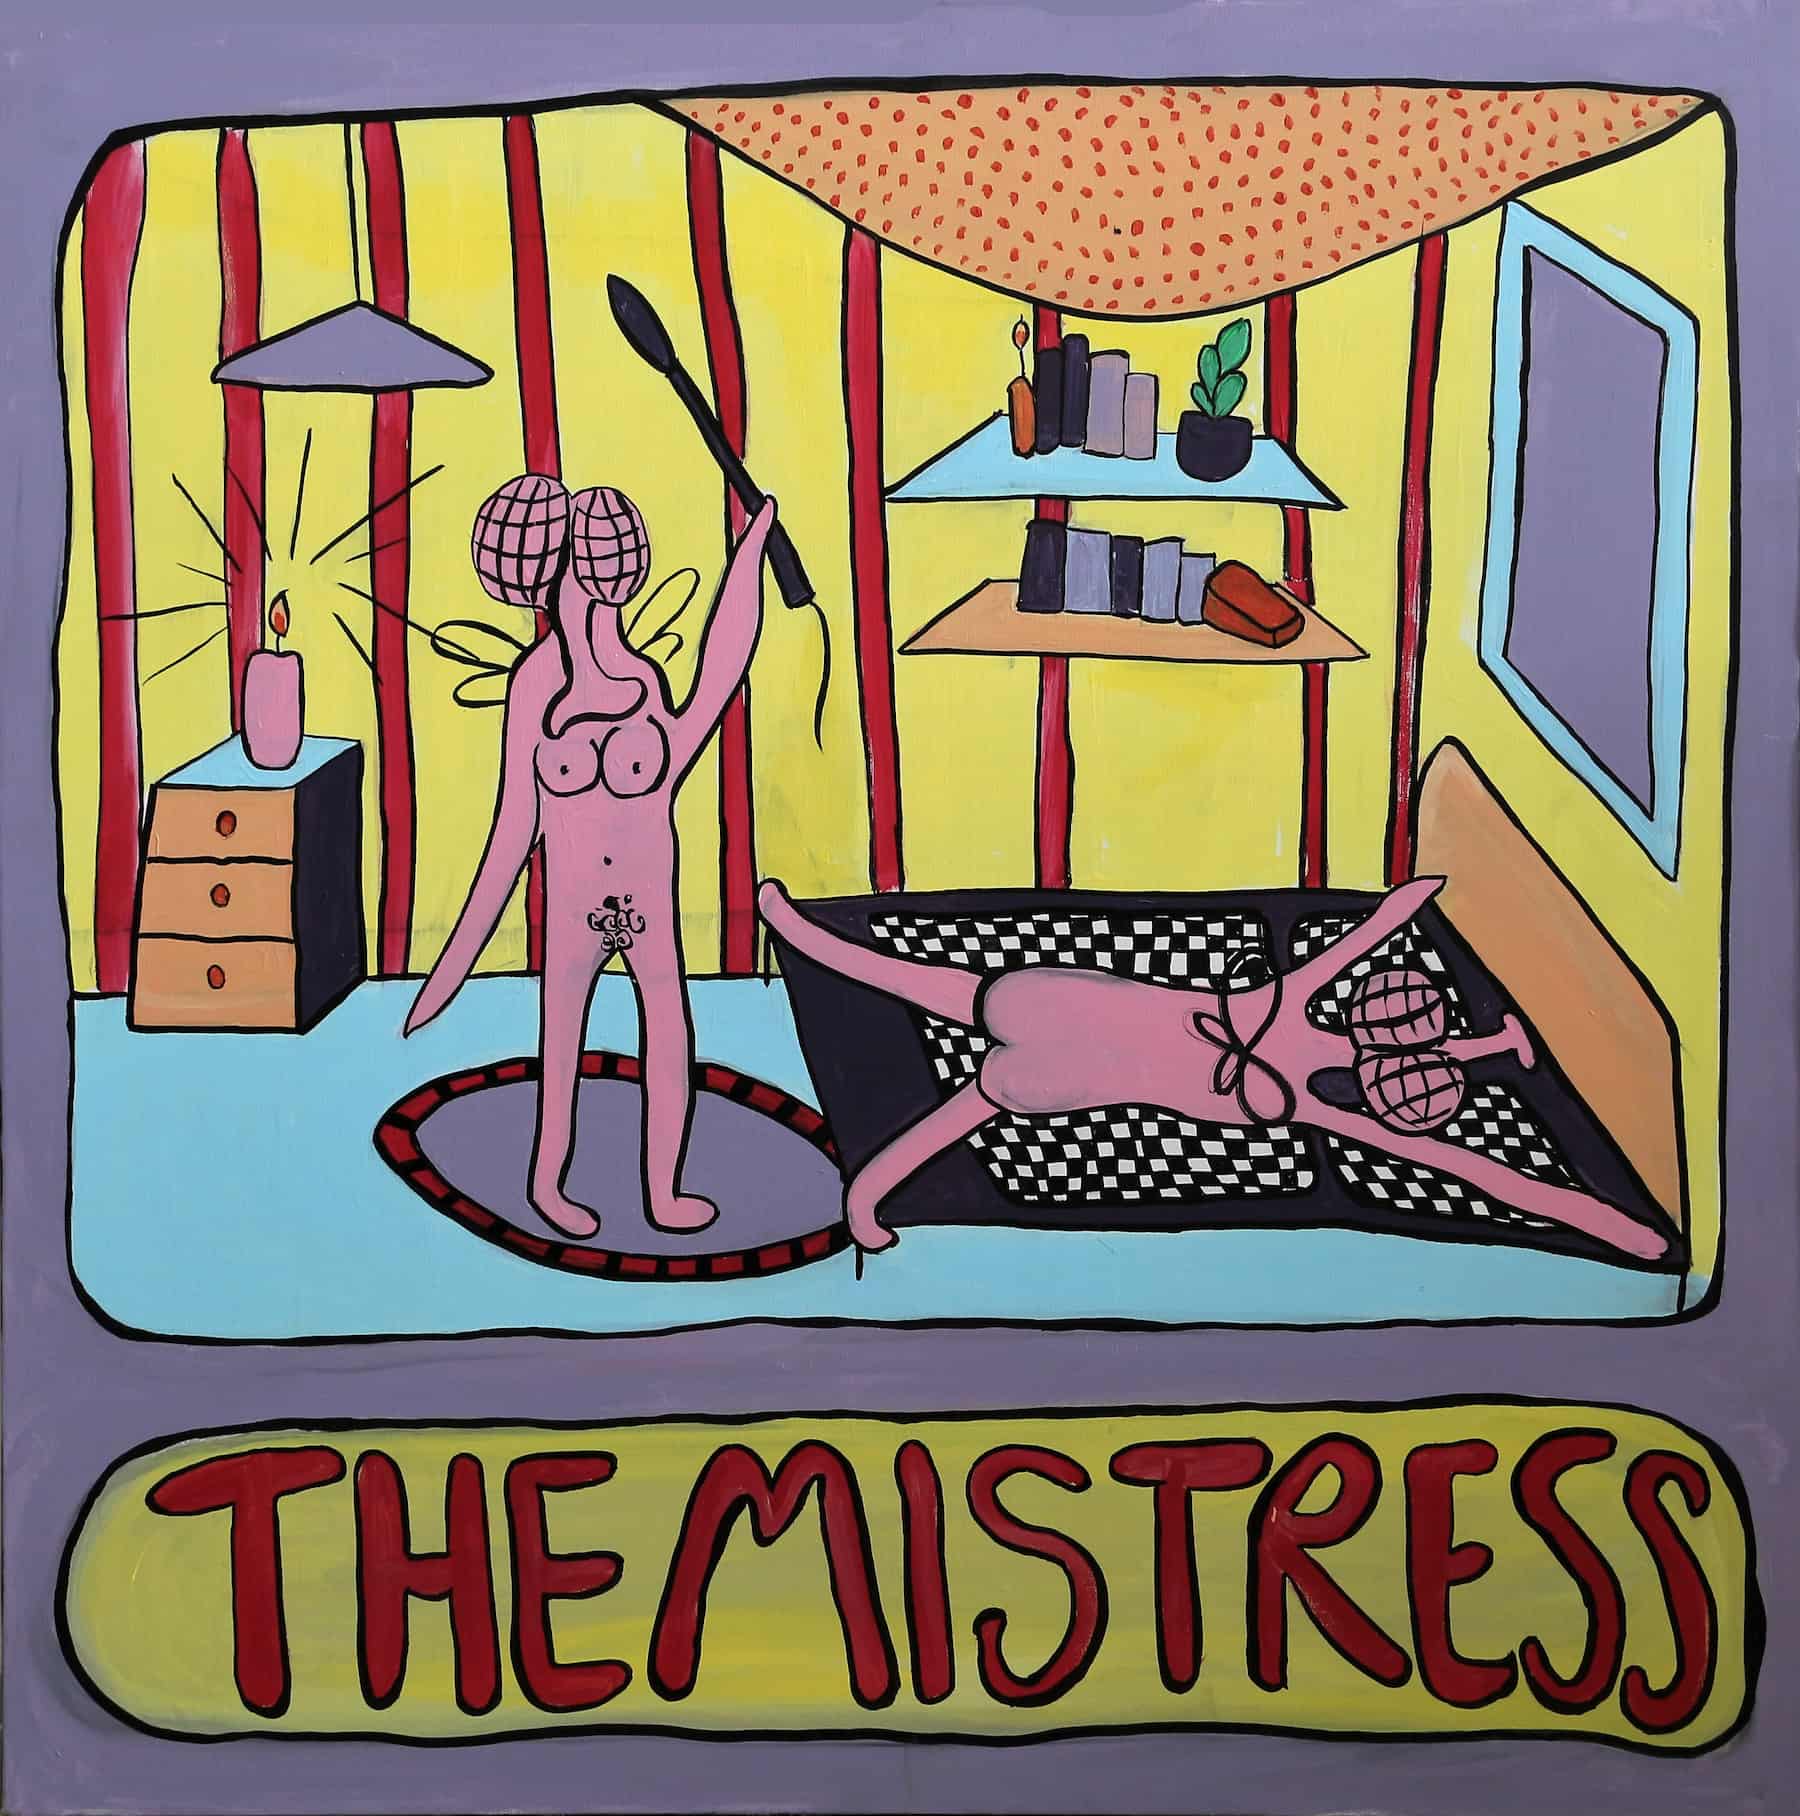 The Mistress, acryl auf leinwand, 90 x 90 cm, 2020